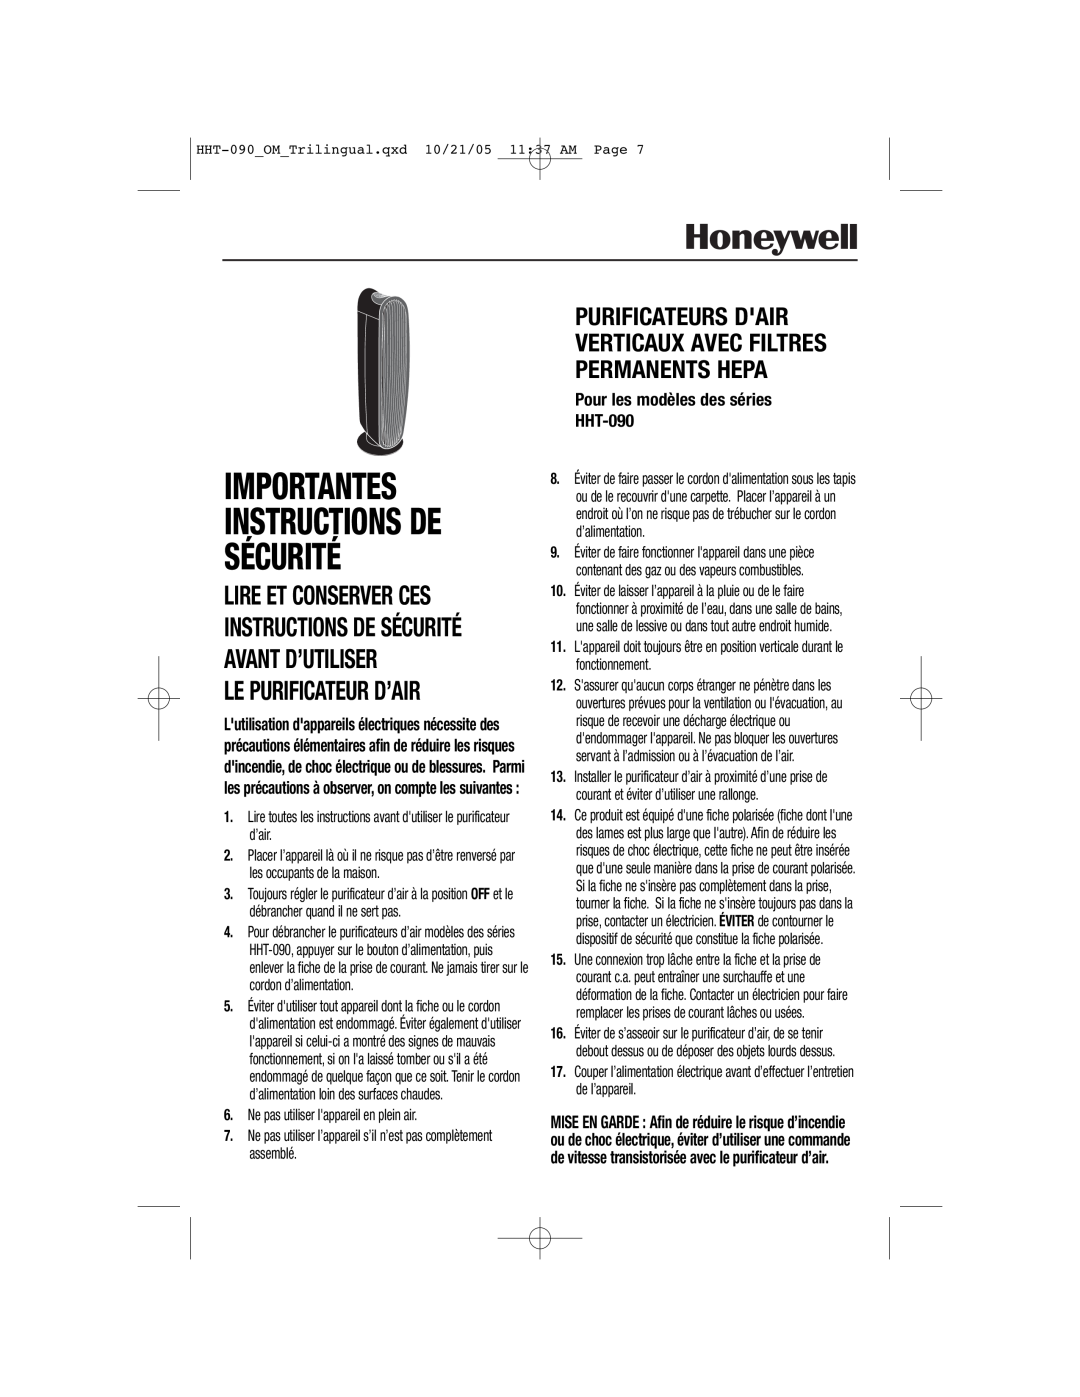 Honeywell Importantes, Sécurité, Pour les modèles des séries HHT-090, Instructions De, Le Purificateur D’Air 